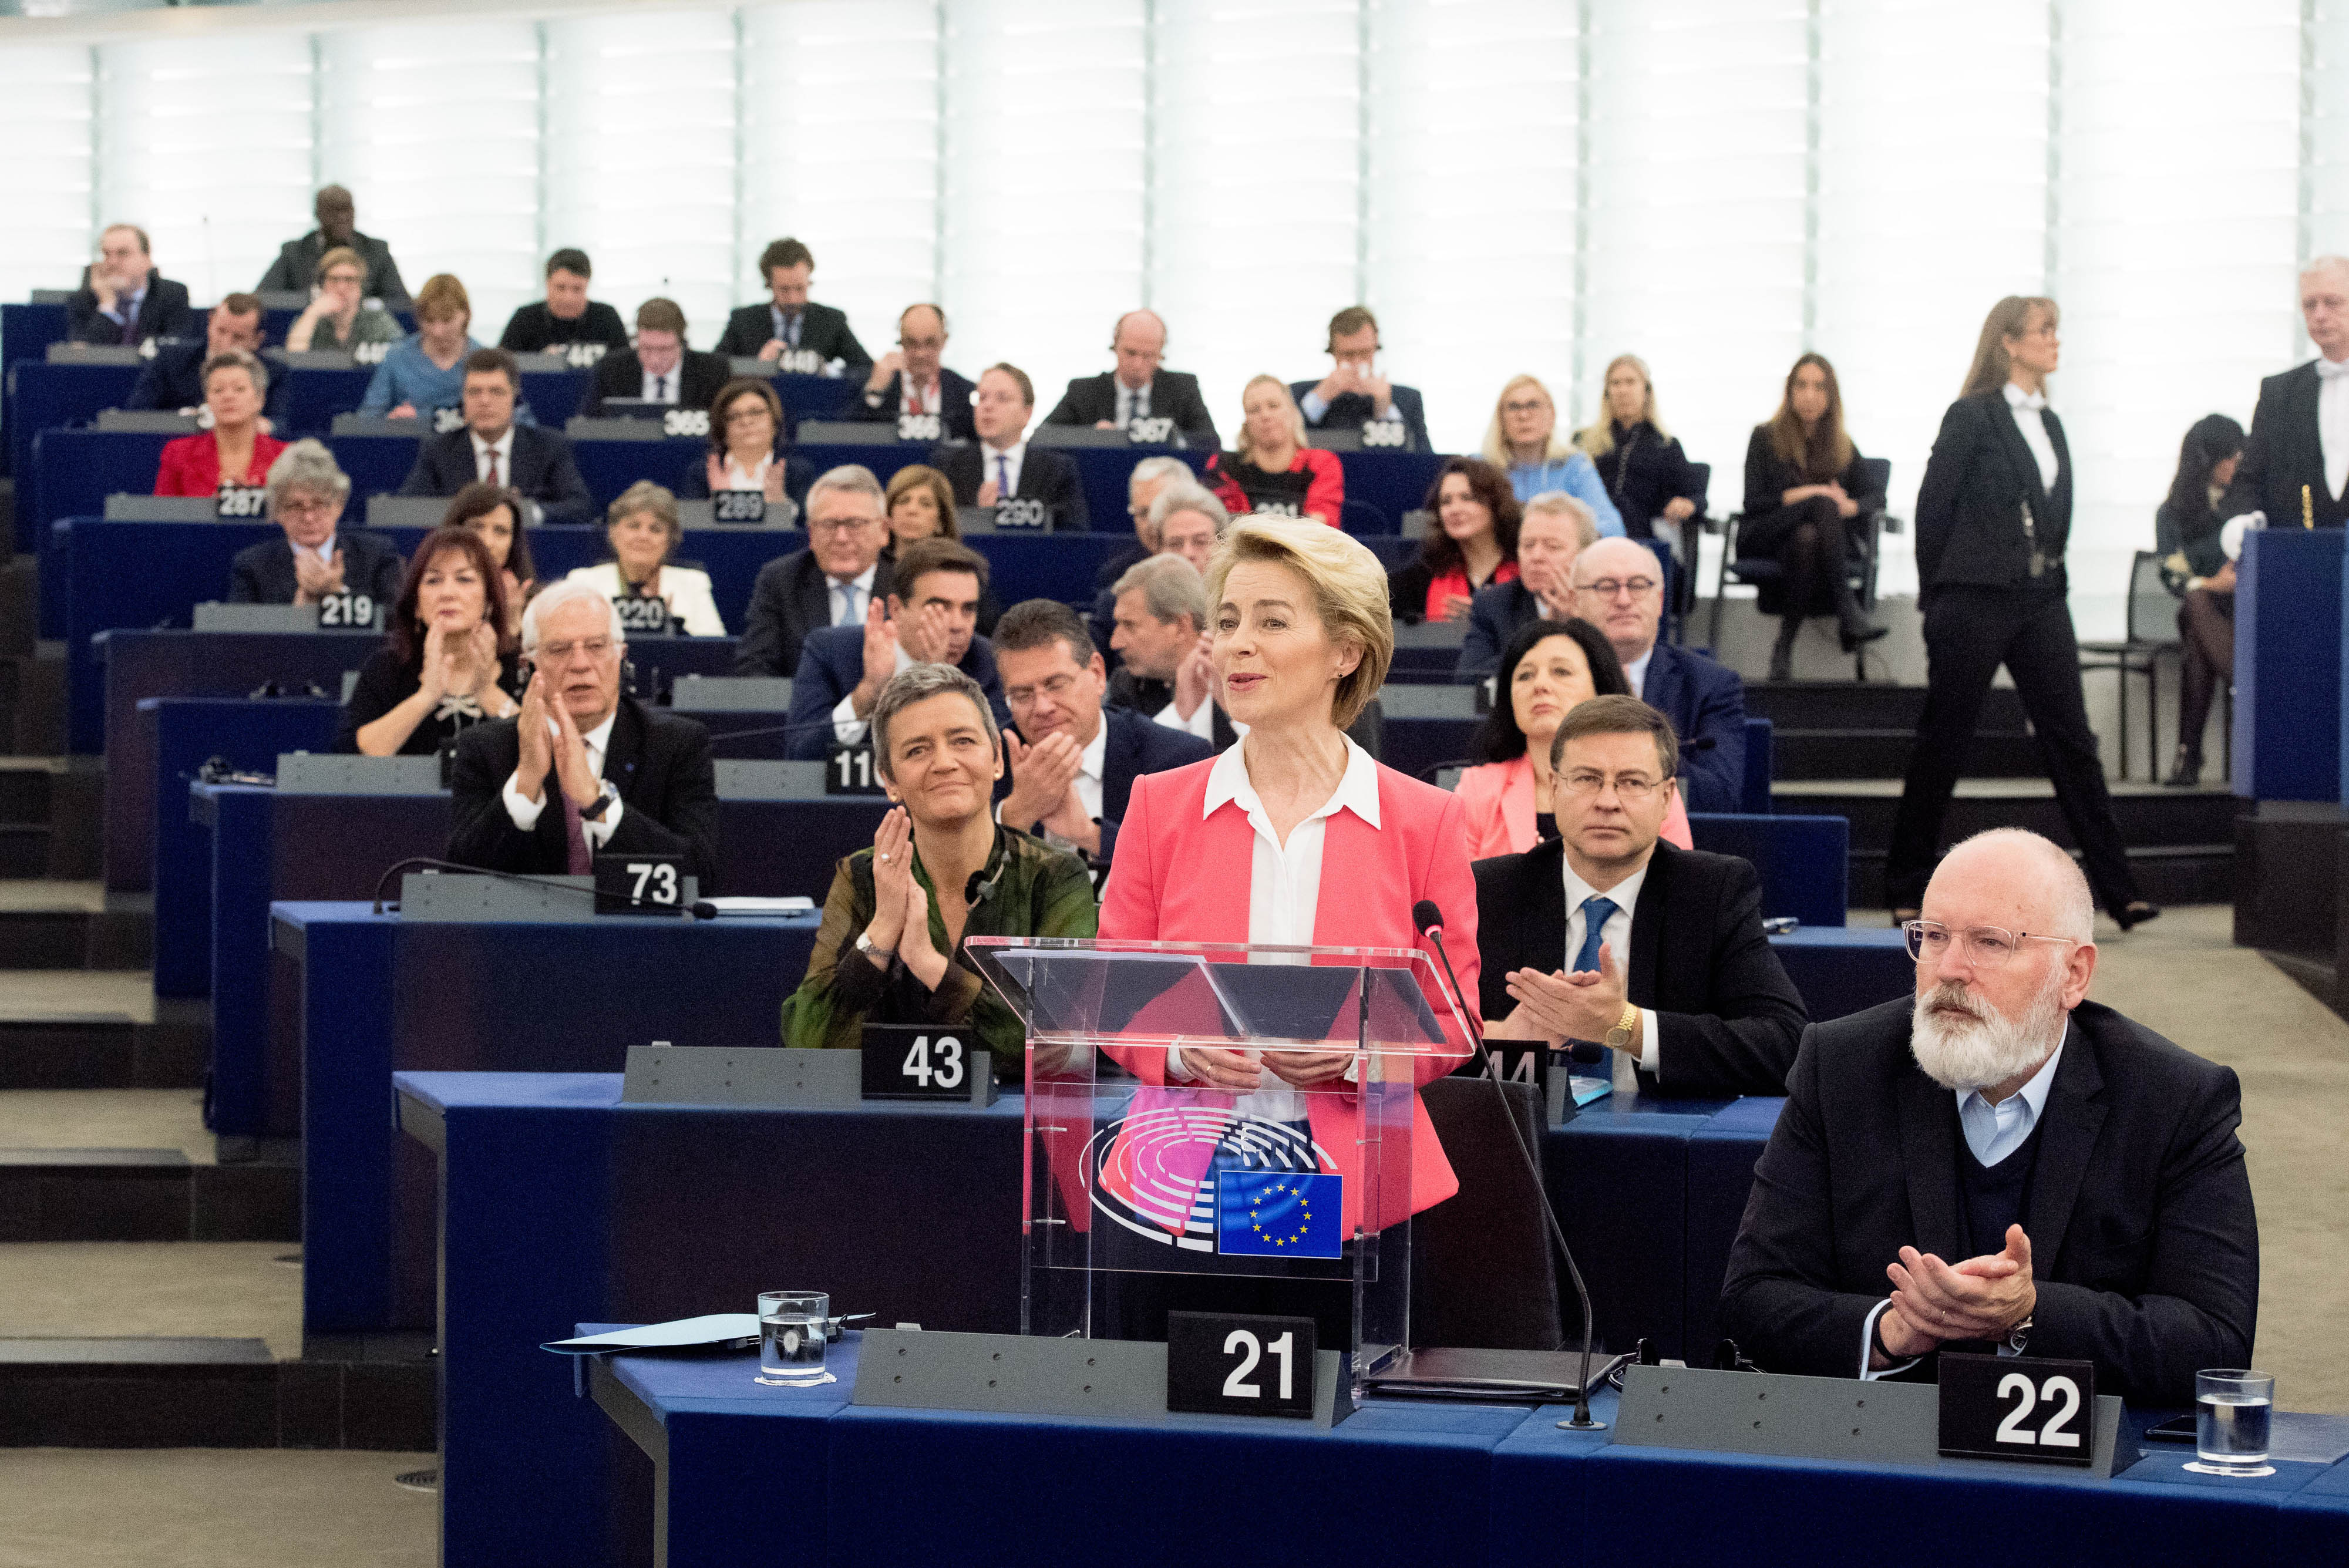 Ursula von der Leyen Presidente eletta della Commissione europea alla sessione plenaria del Parlamento europeo del 27 novembre 2019